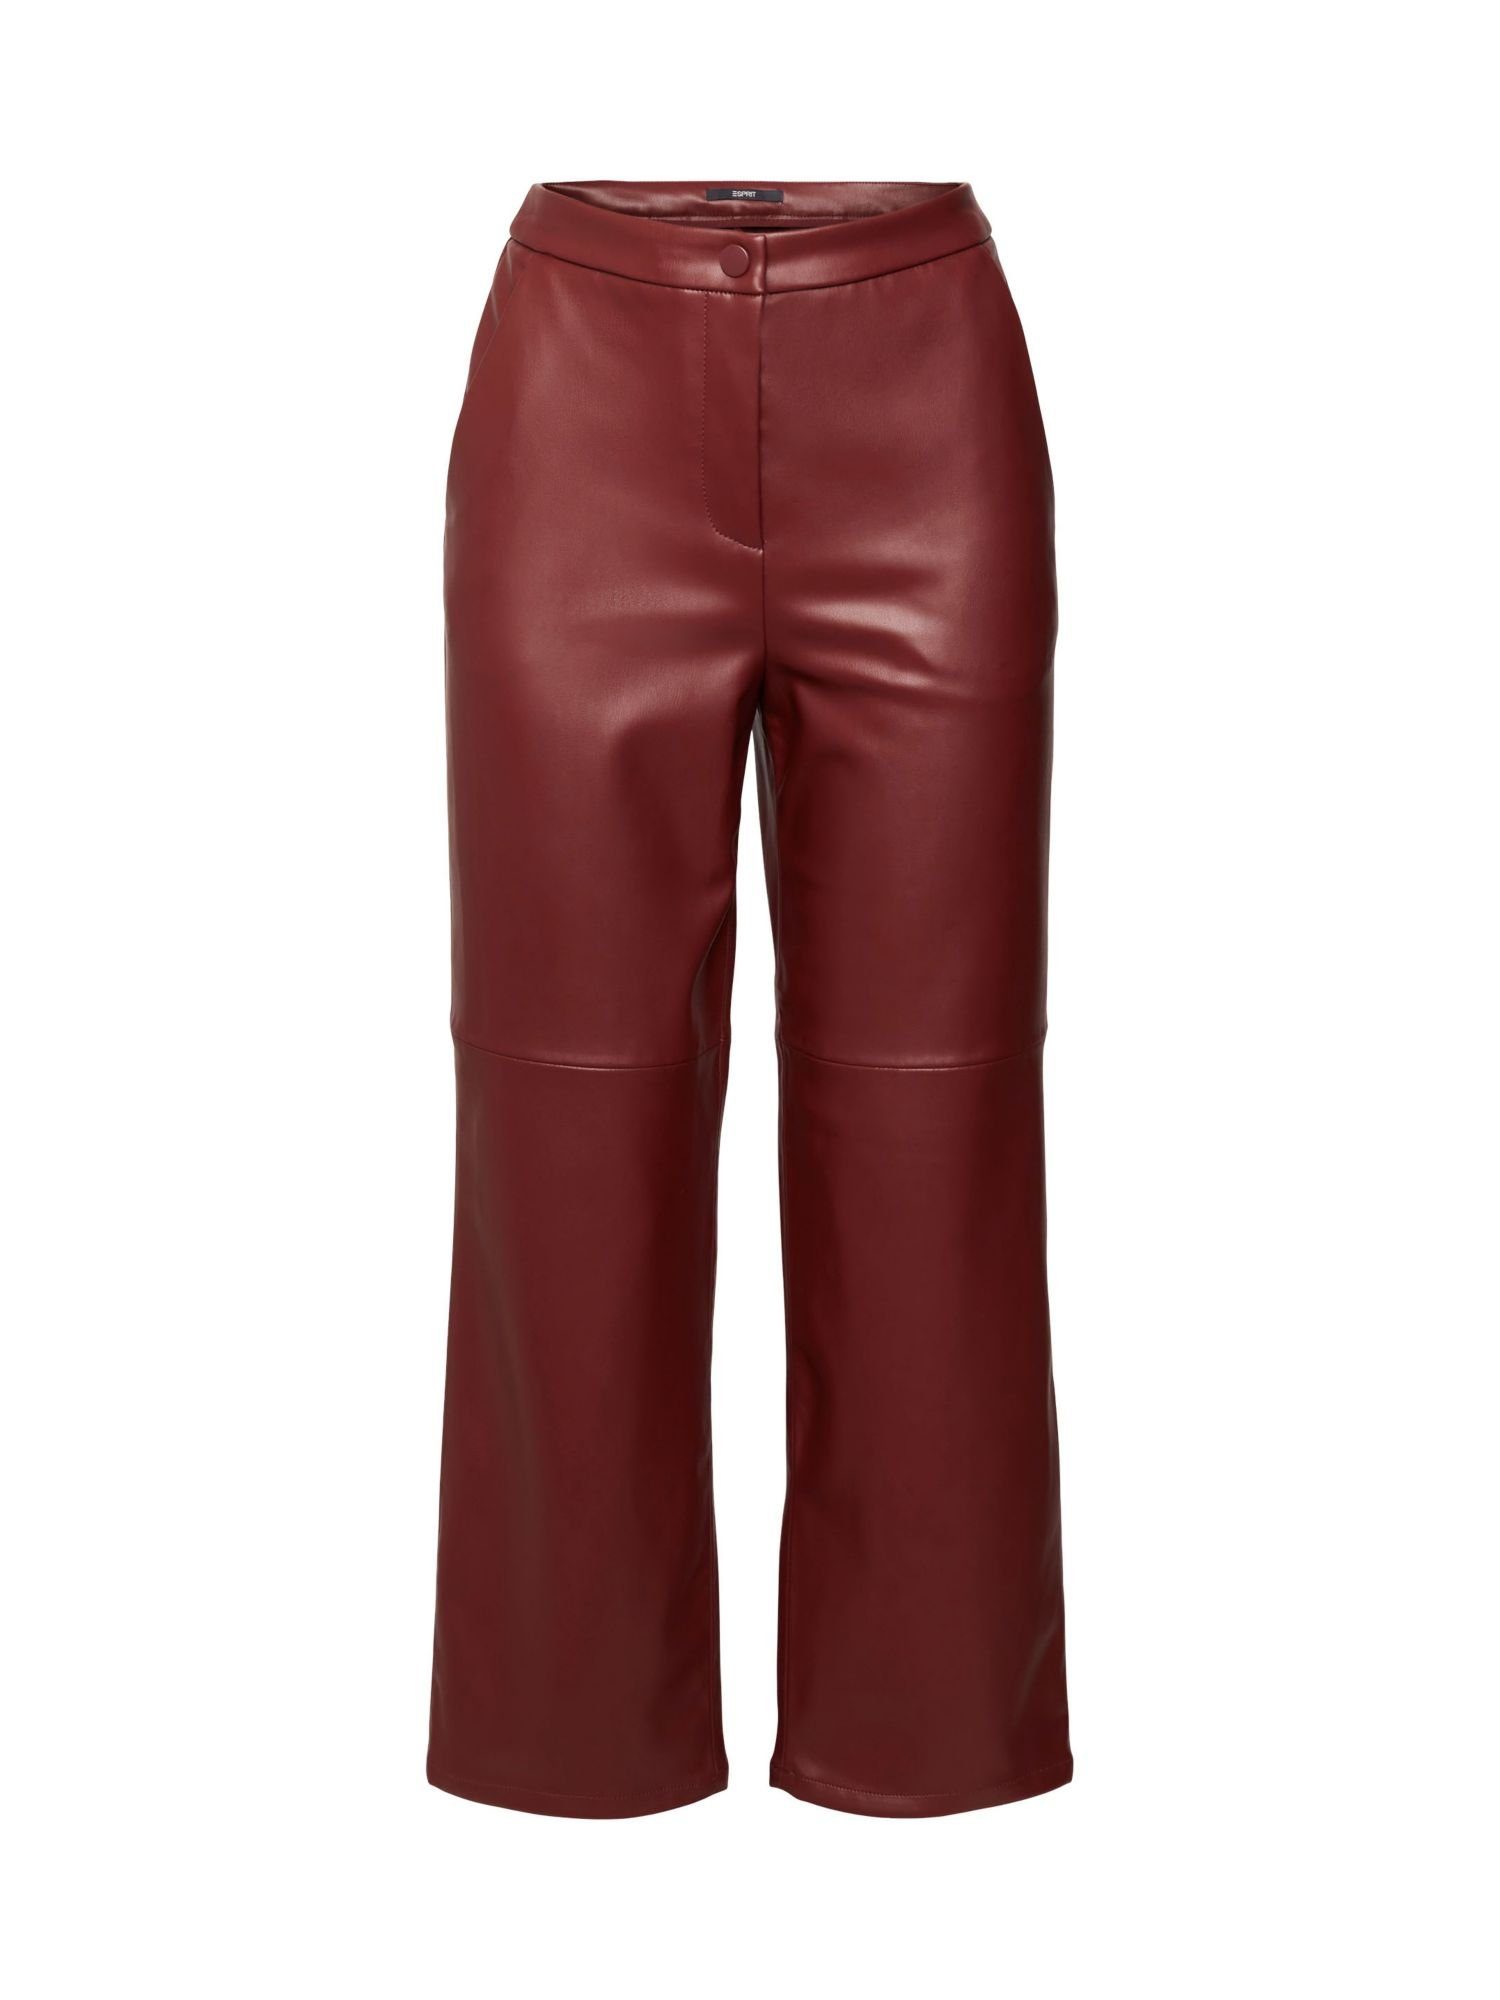 Esprit Collection 7/8-Hose Cropped-Hose in Lederoptik BORDEAUX RED | Gerade Hosen